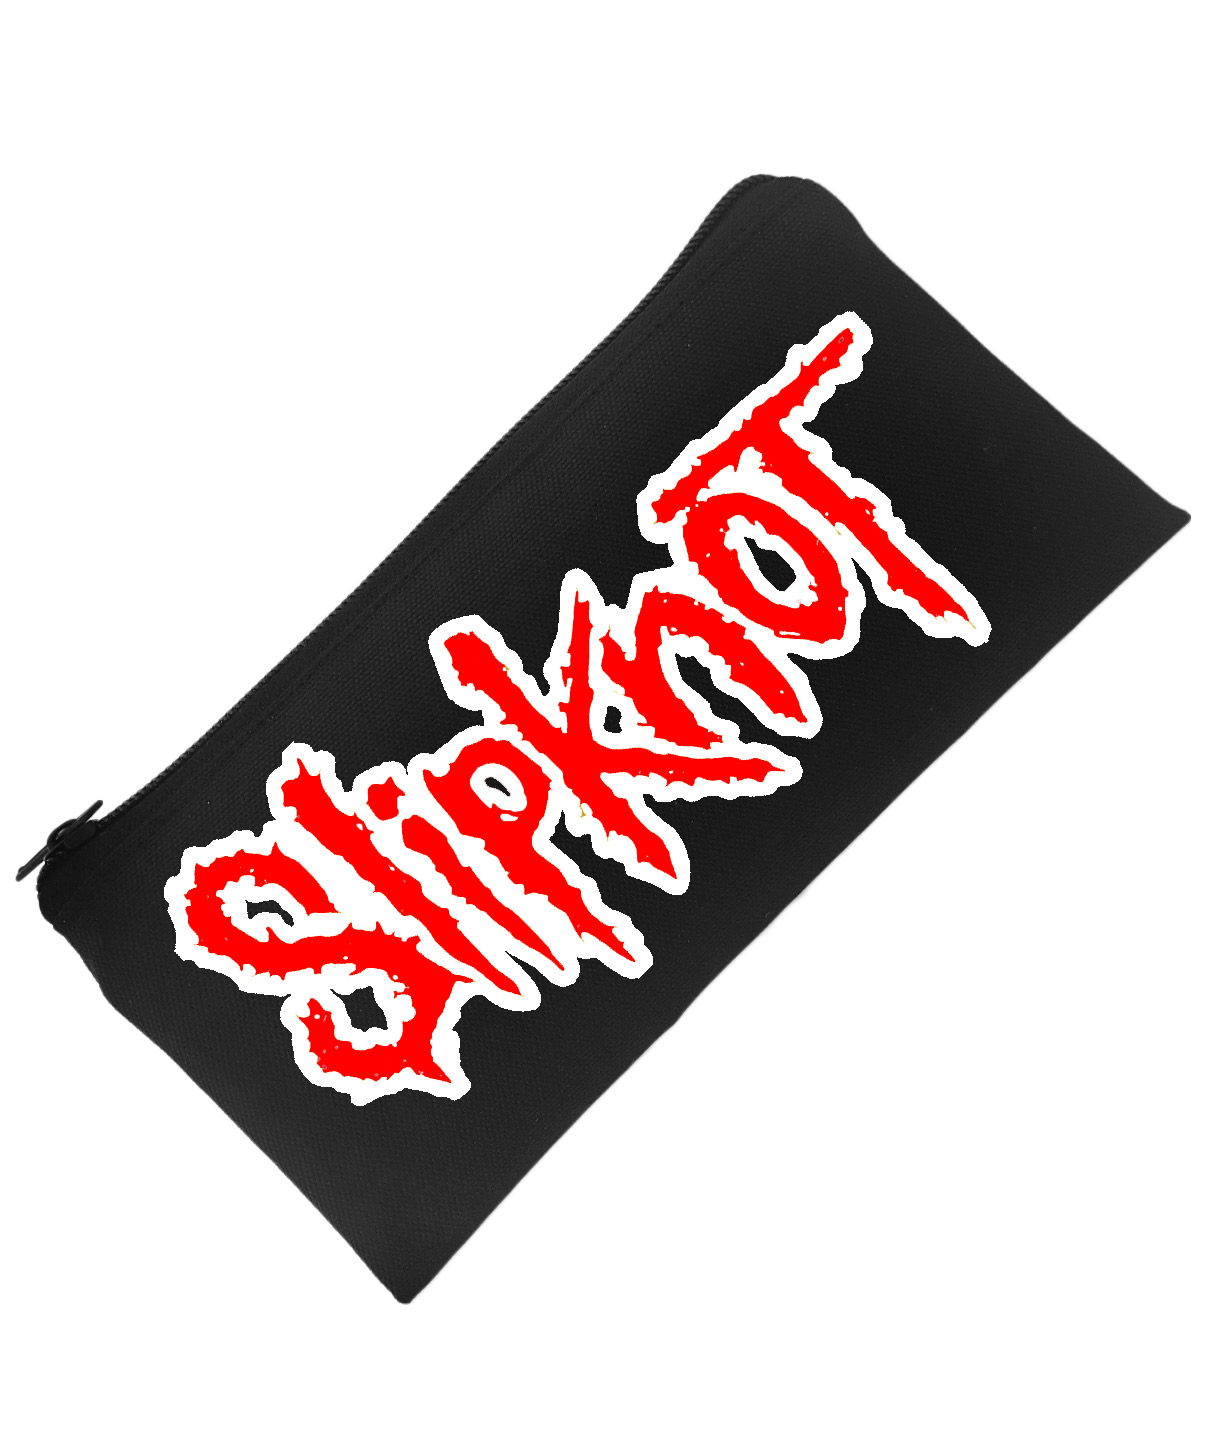 Пенал Slipknot - фото 1 - rockbunker.ru